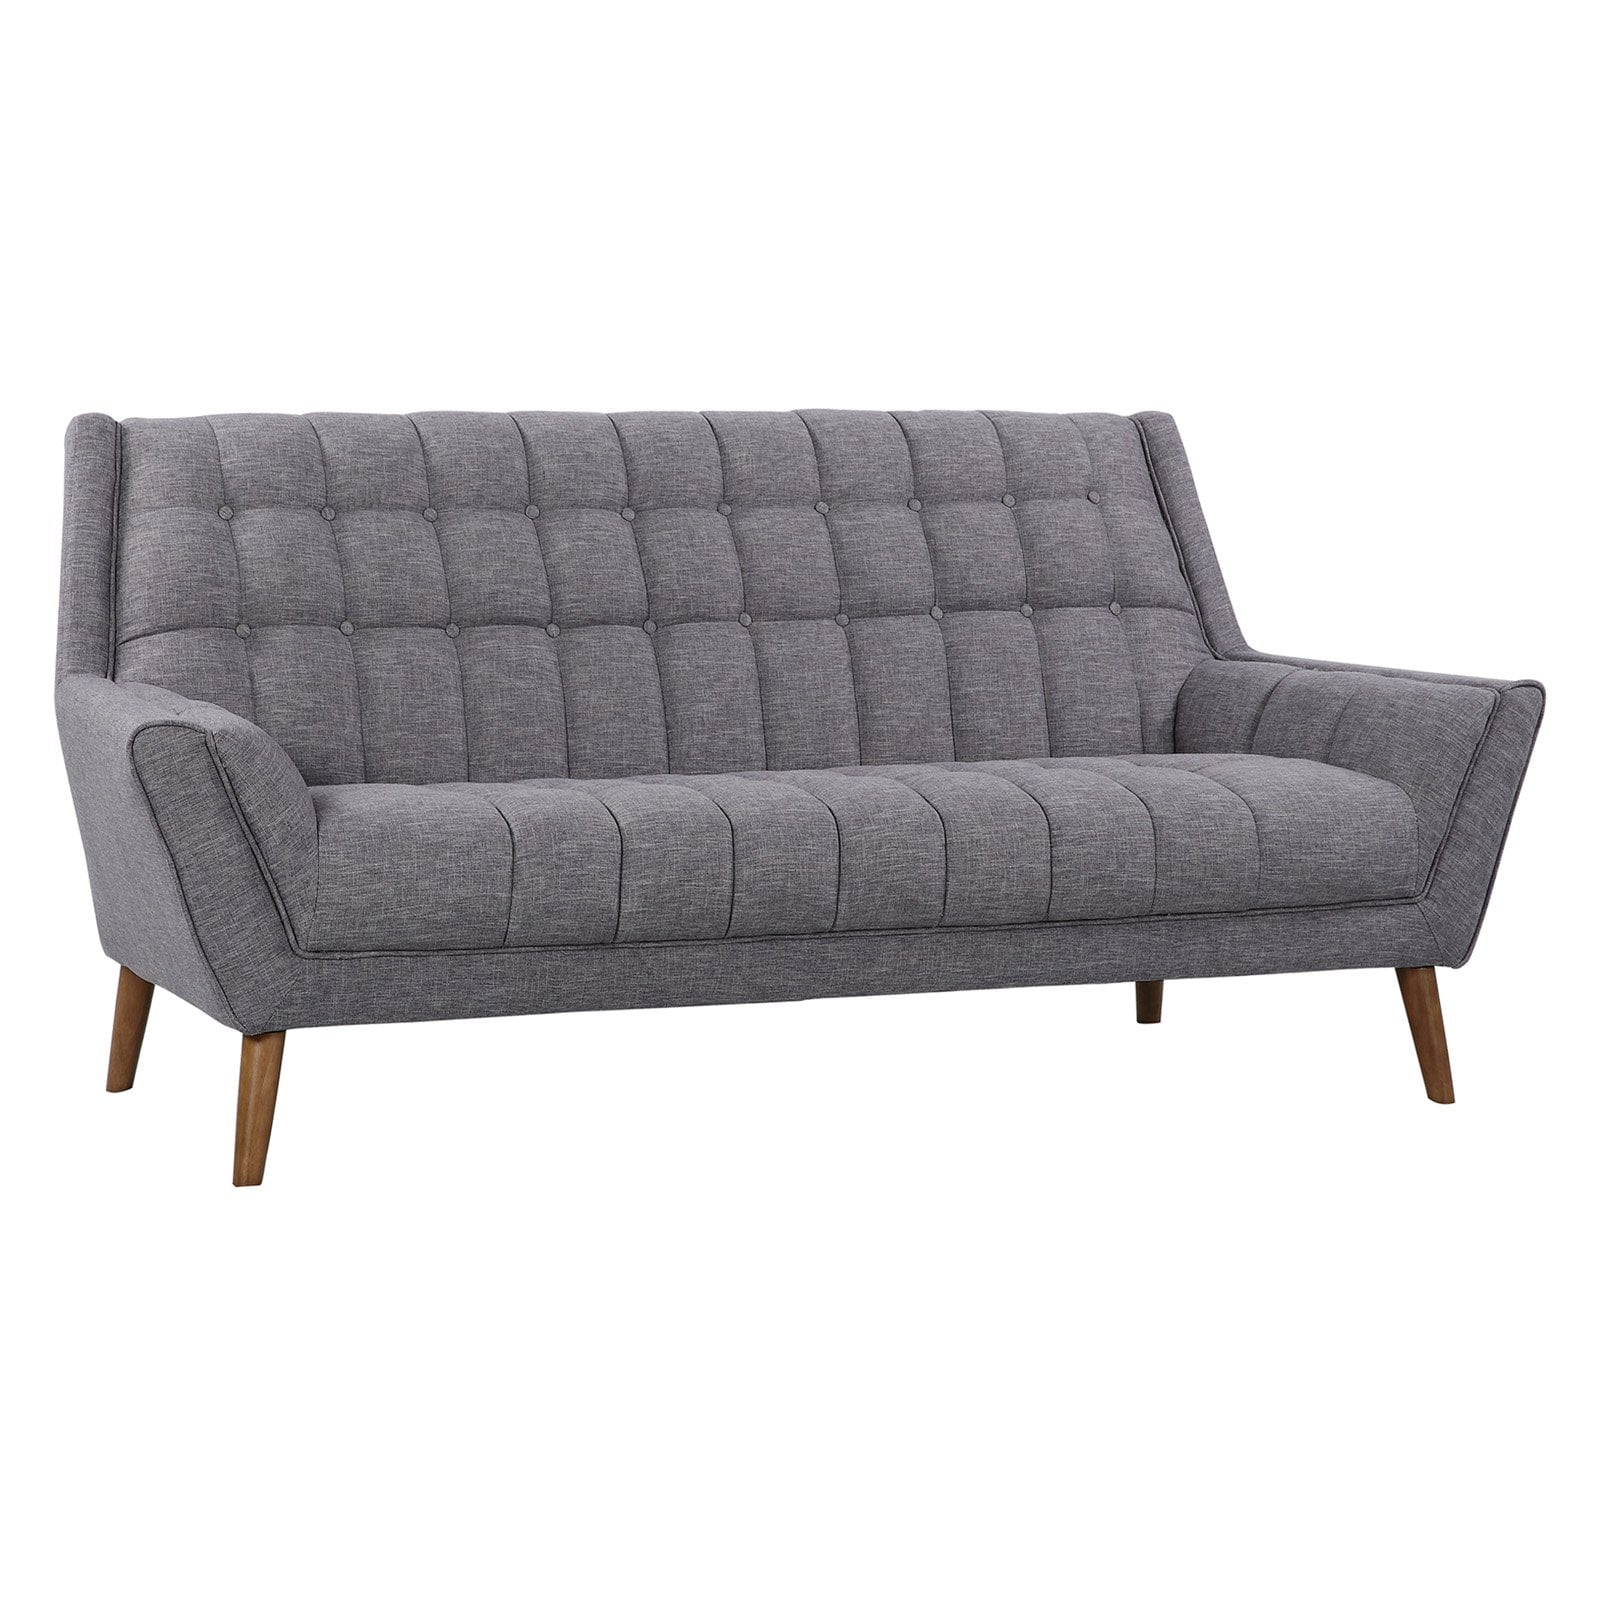 Cobra Mid-century Modern Sofa In Dark Gray Linen Walnut Legs